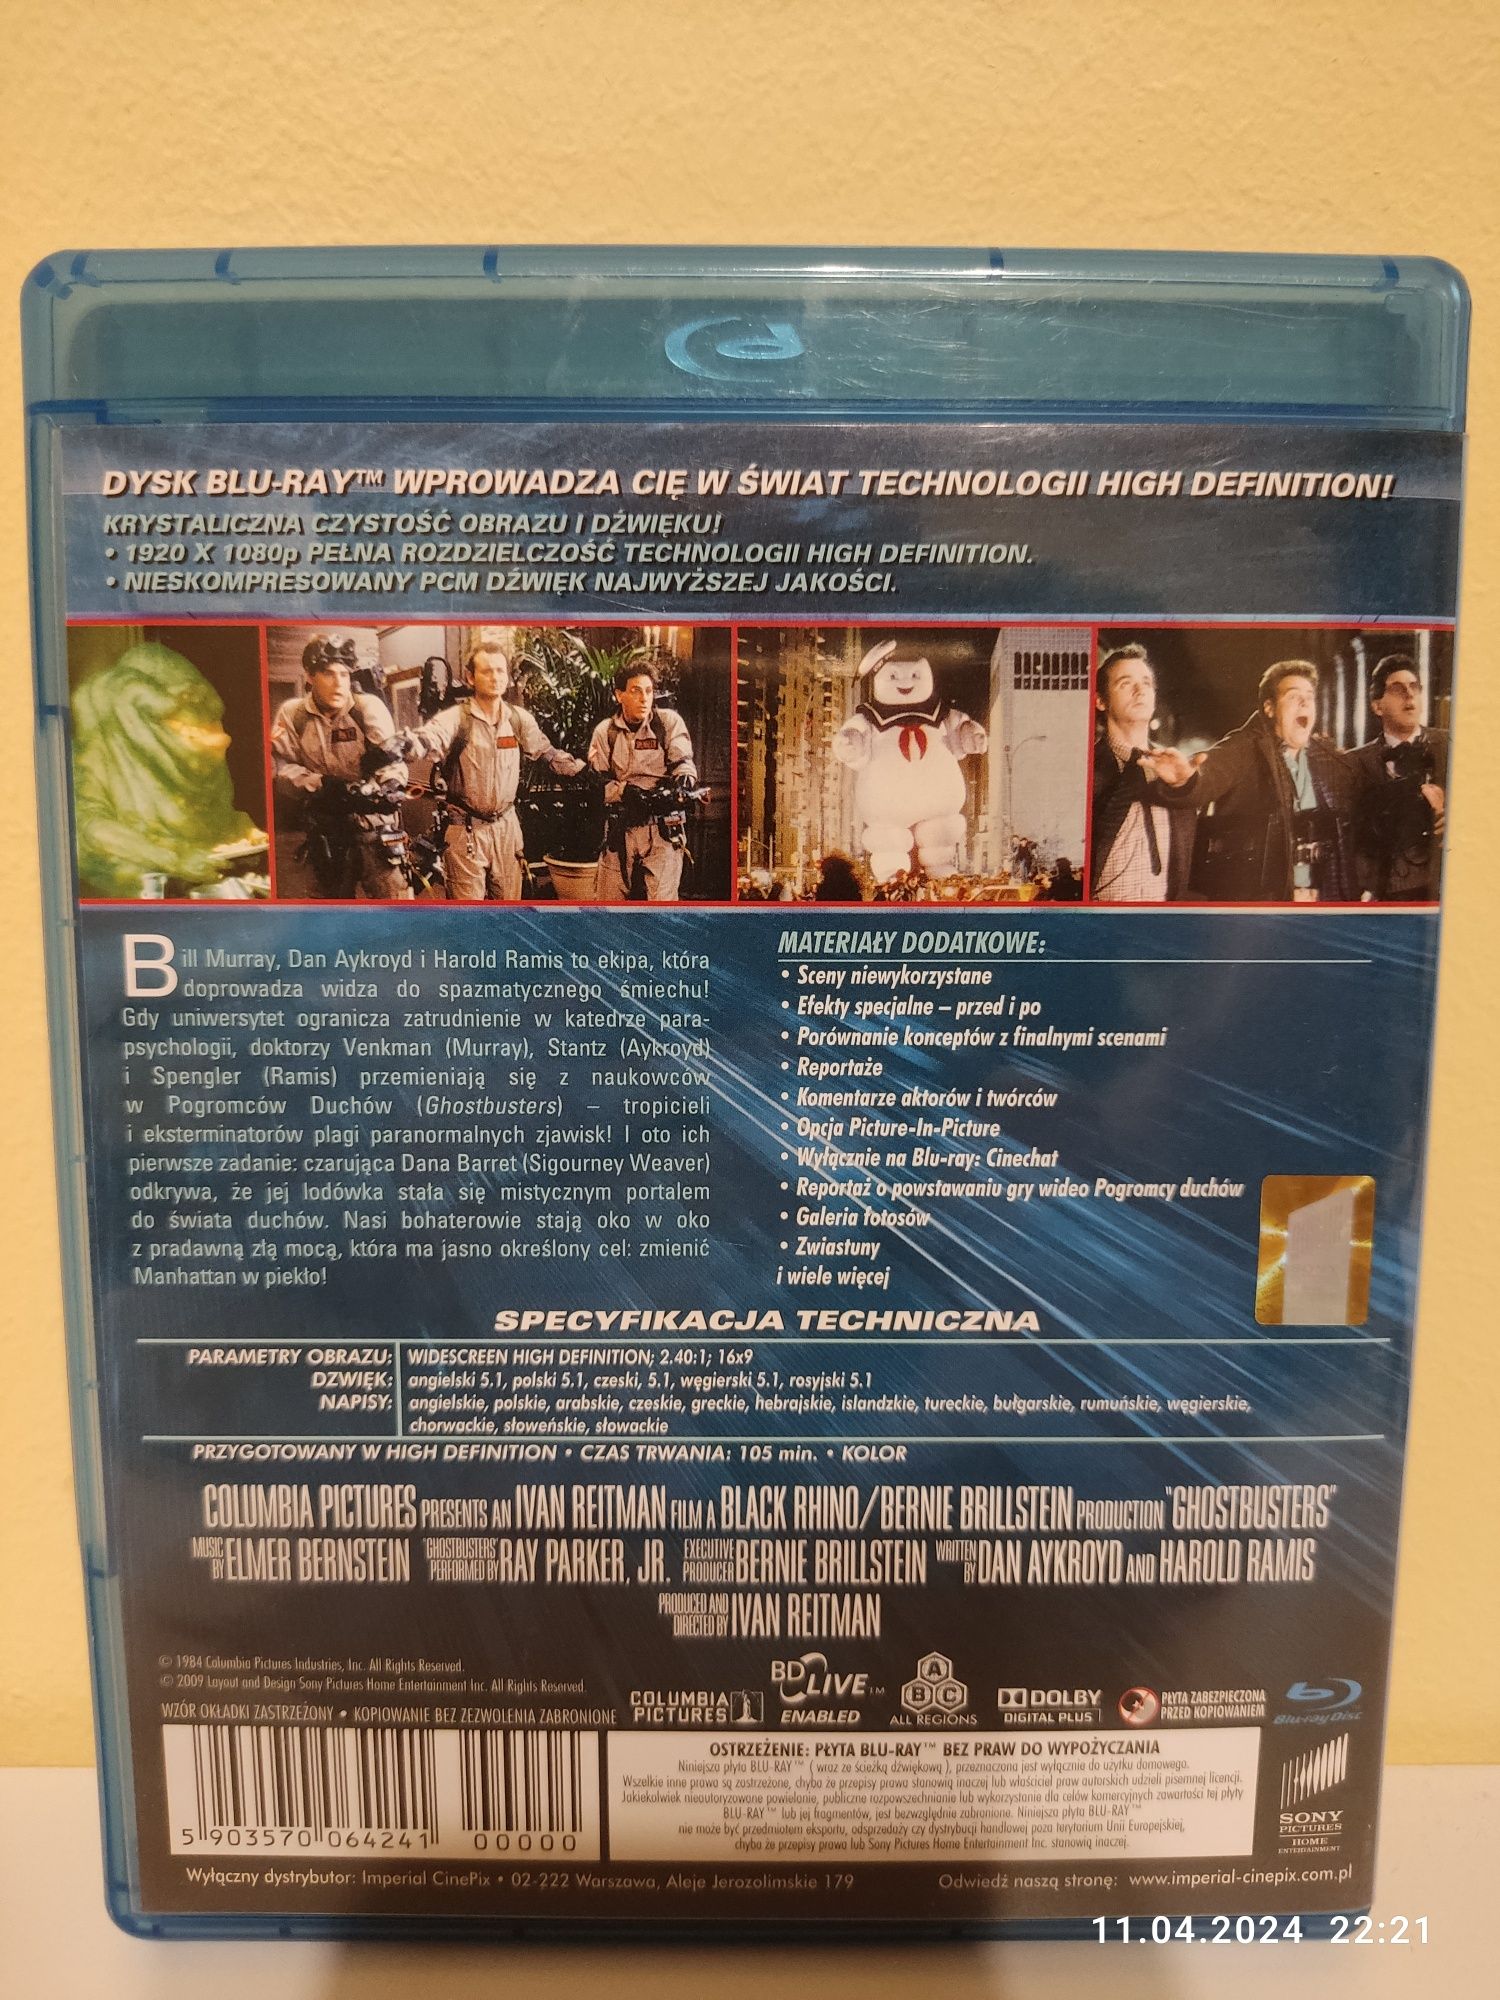 Pogromcy Duchów Blu ray lektor napisy PL Ghostbusters